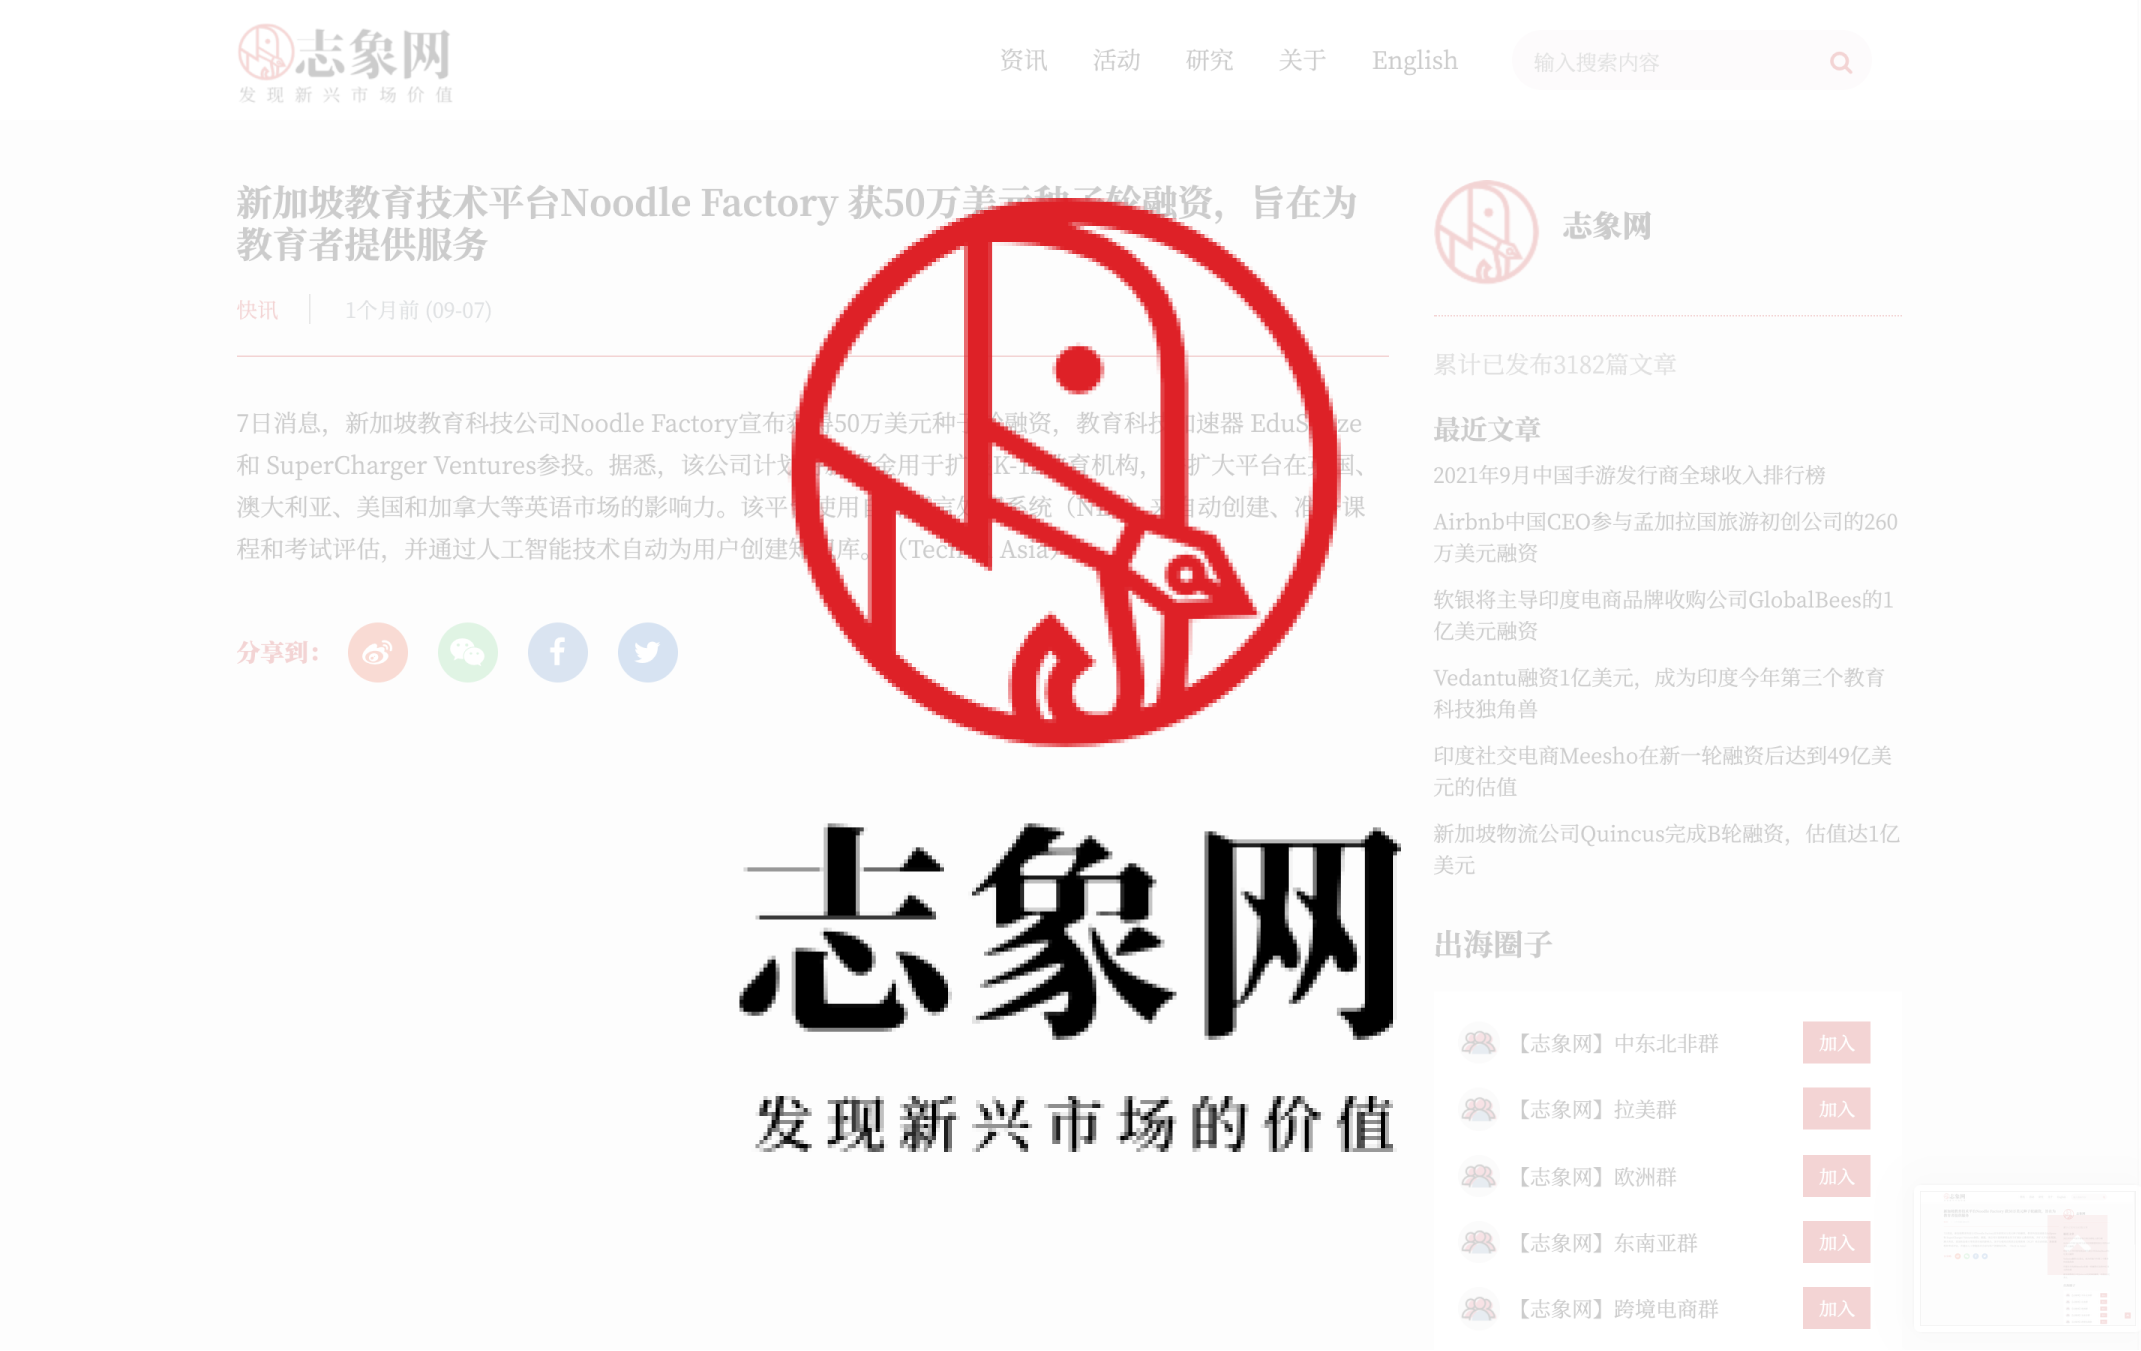 noodle-factory-chuhai-post-press-release